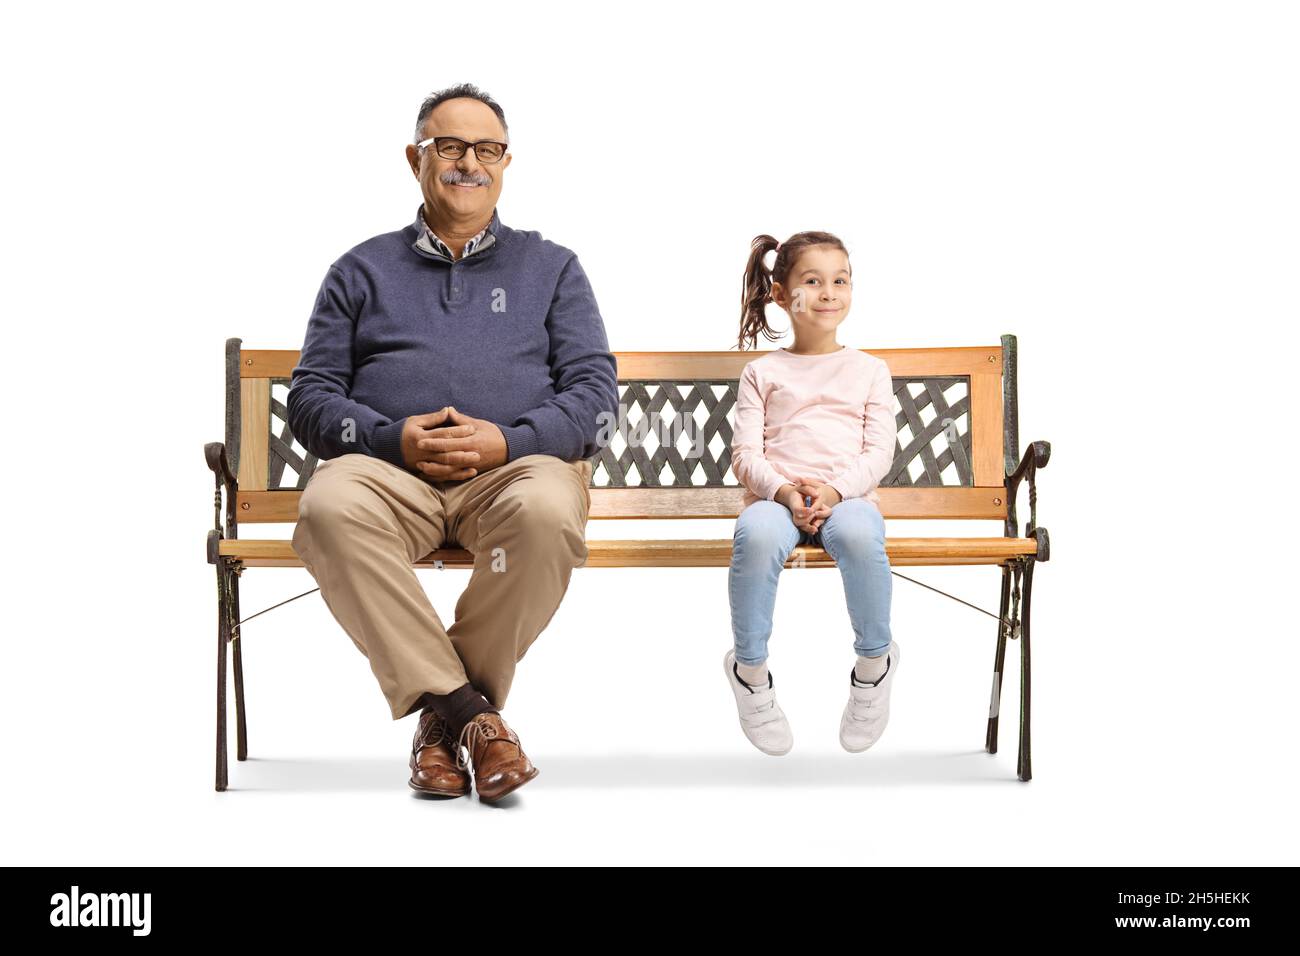 Homme mature et une petite fille assis sur un banc et regardant la caméra isolée sur fond blanc Banque D'Images